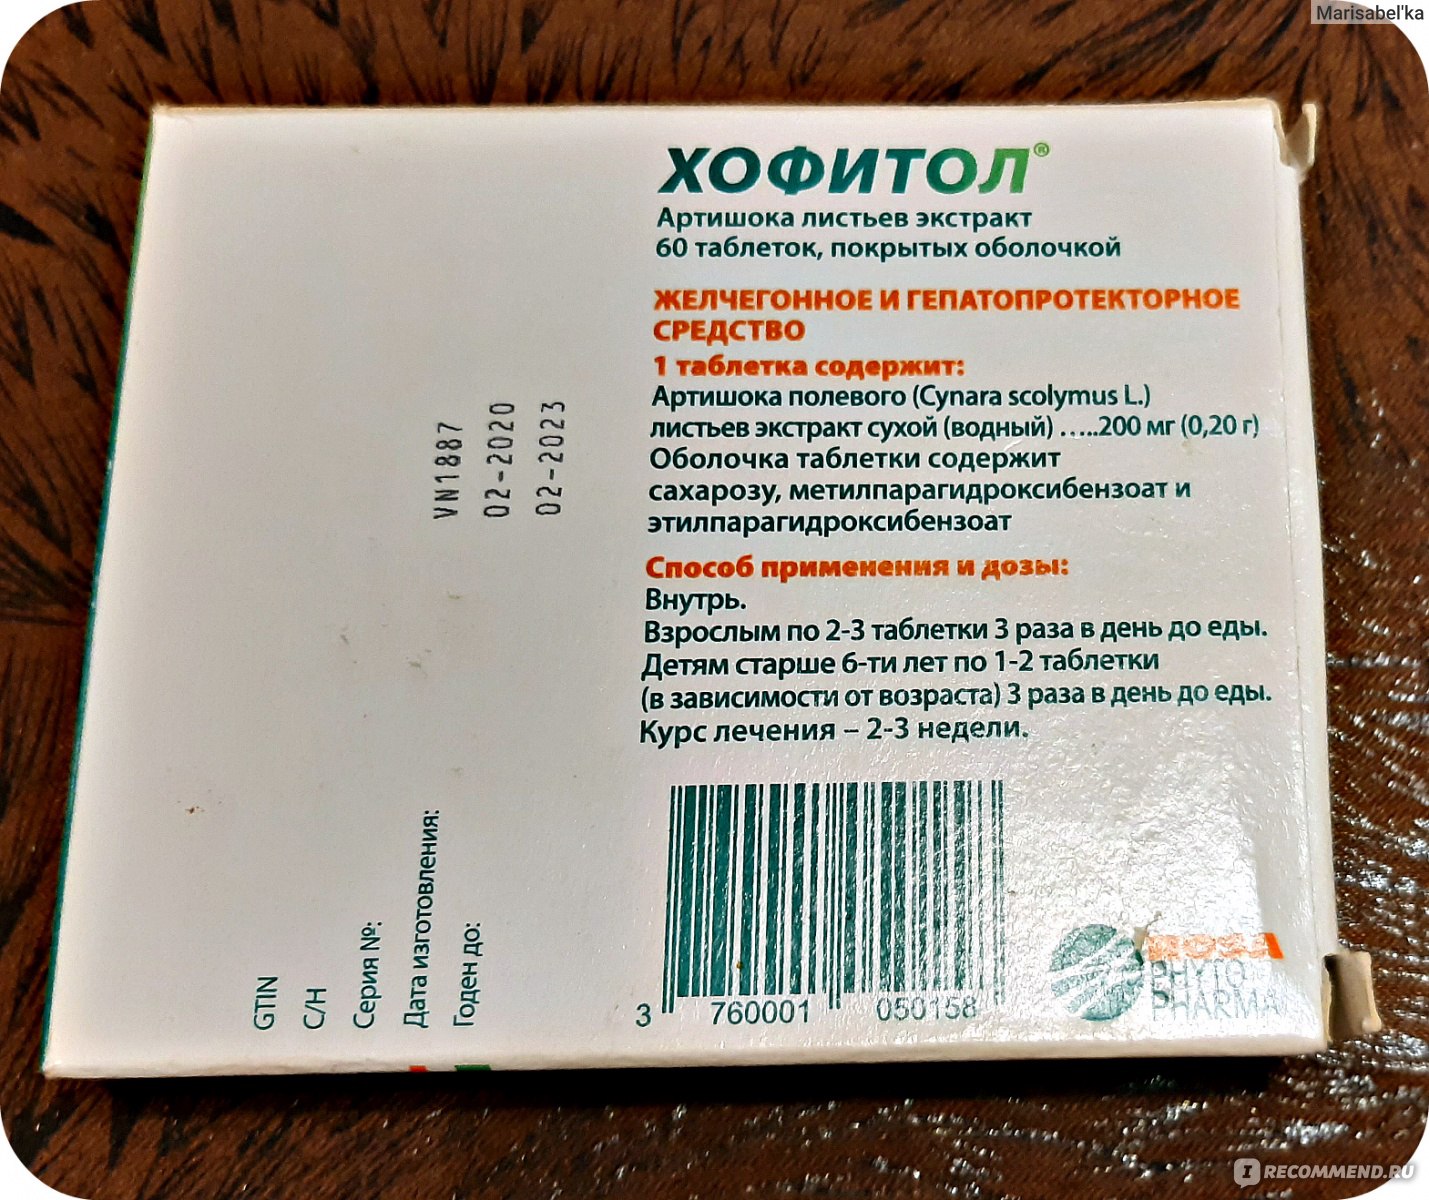 Как принимать хофитол в таблетках взрослым